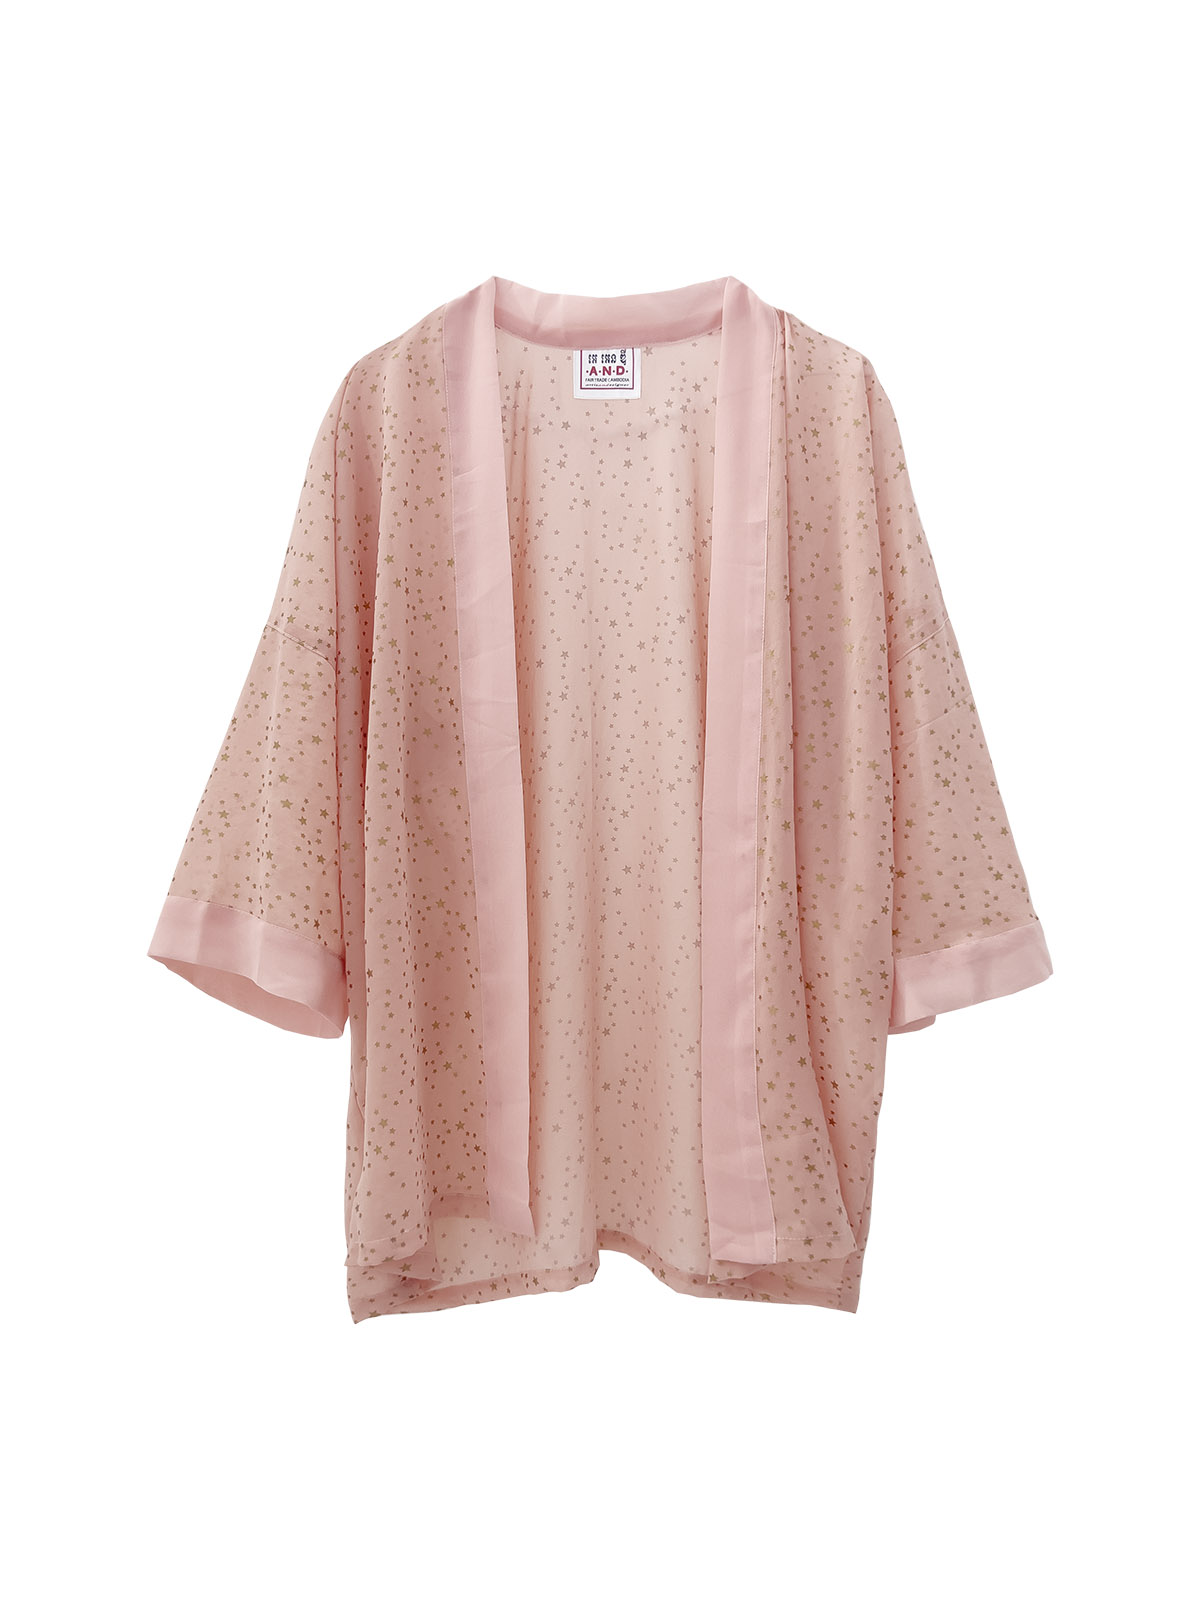 Chiffon Short Robe - Stars on Pink - (h)A.N.D. Fair Fashion - Mitzie Mee Shop